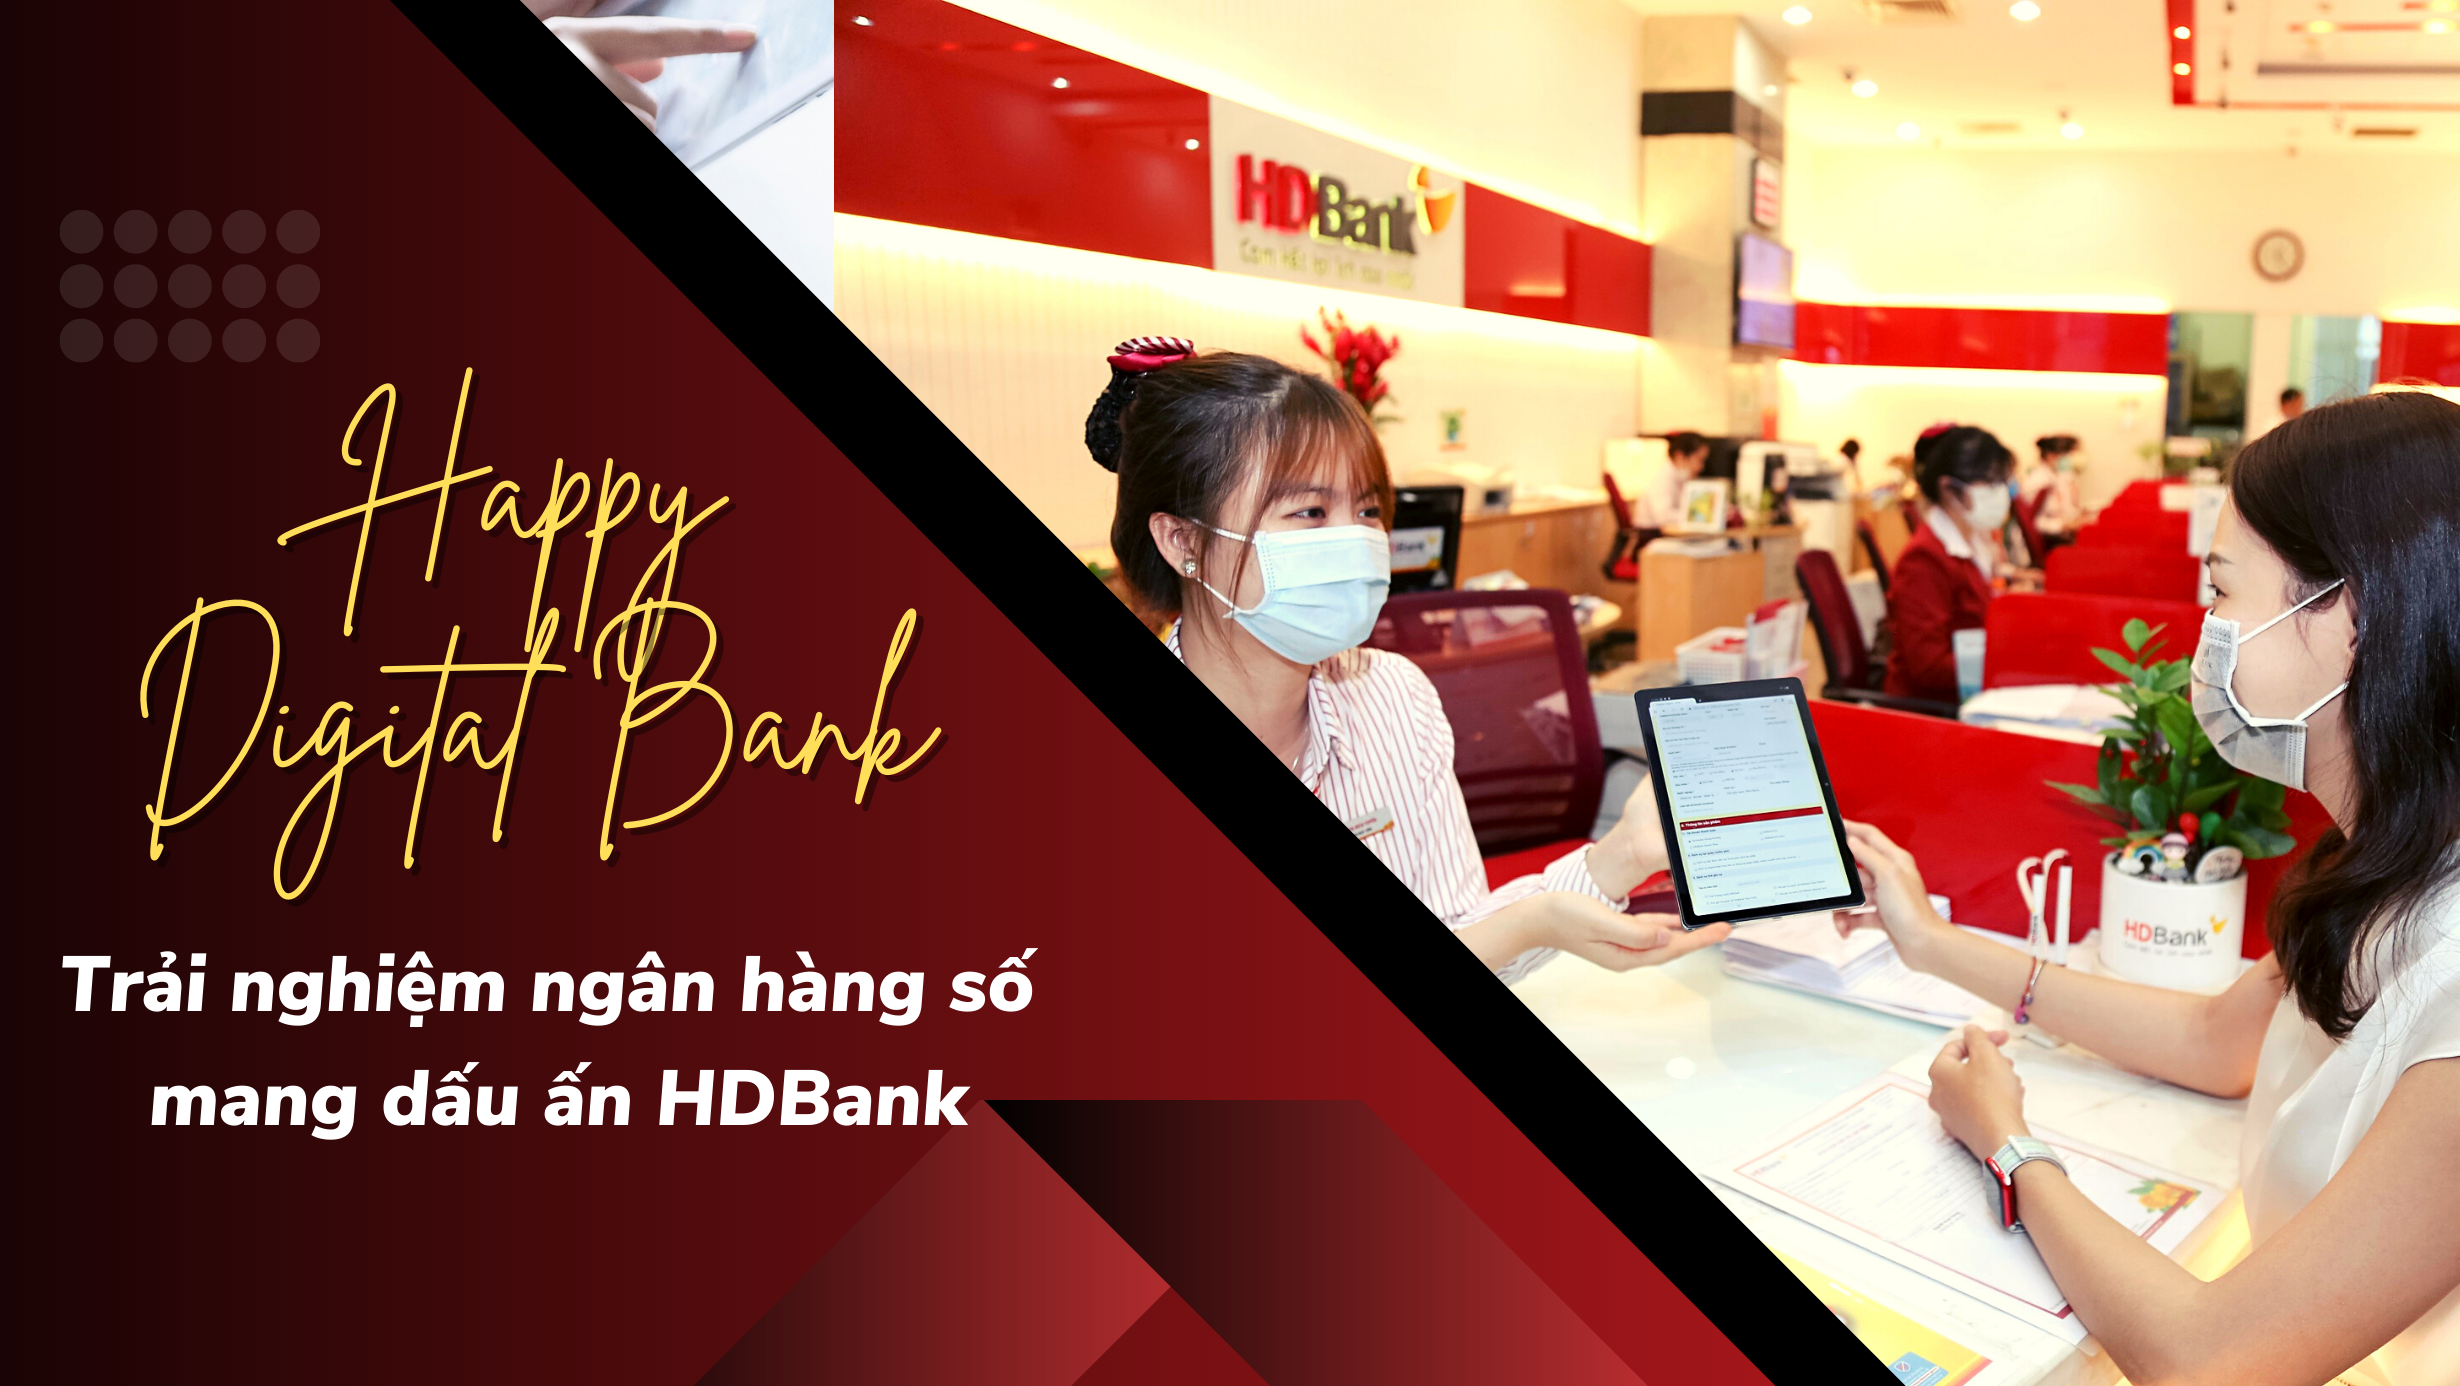 Happy Digital Bank - Trải nghiệm đa dạng với ngân hàng số mang dấu ấn HDBank